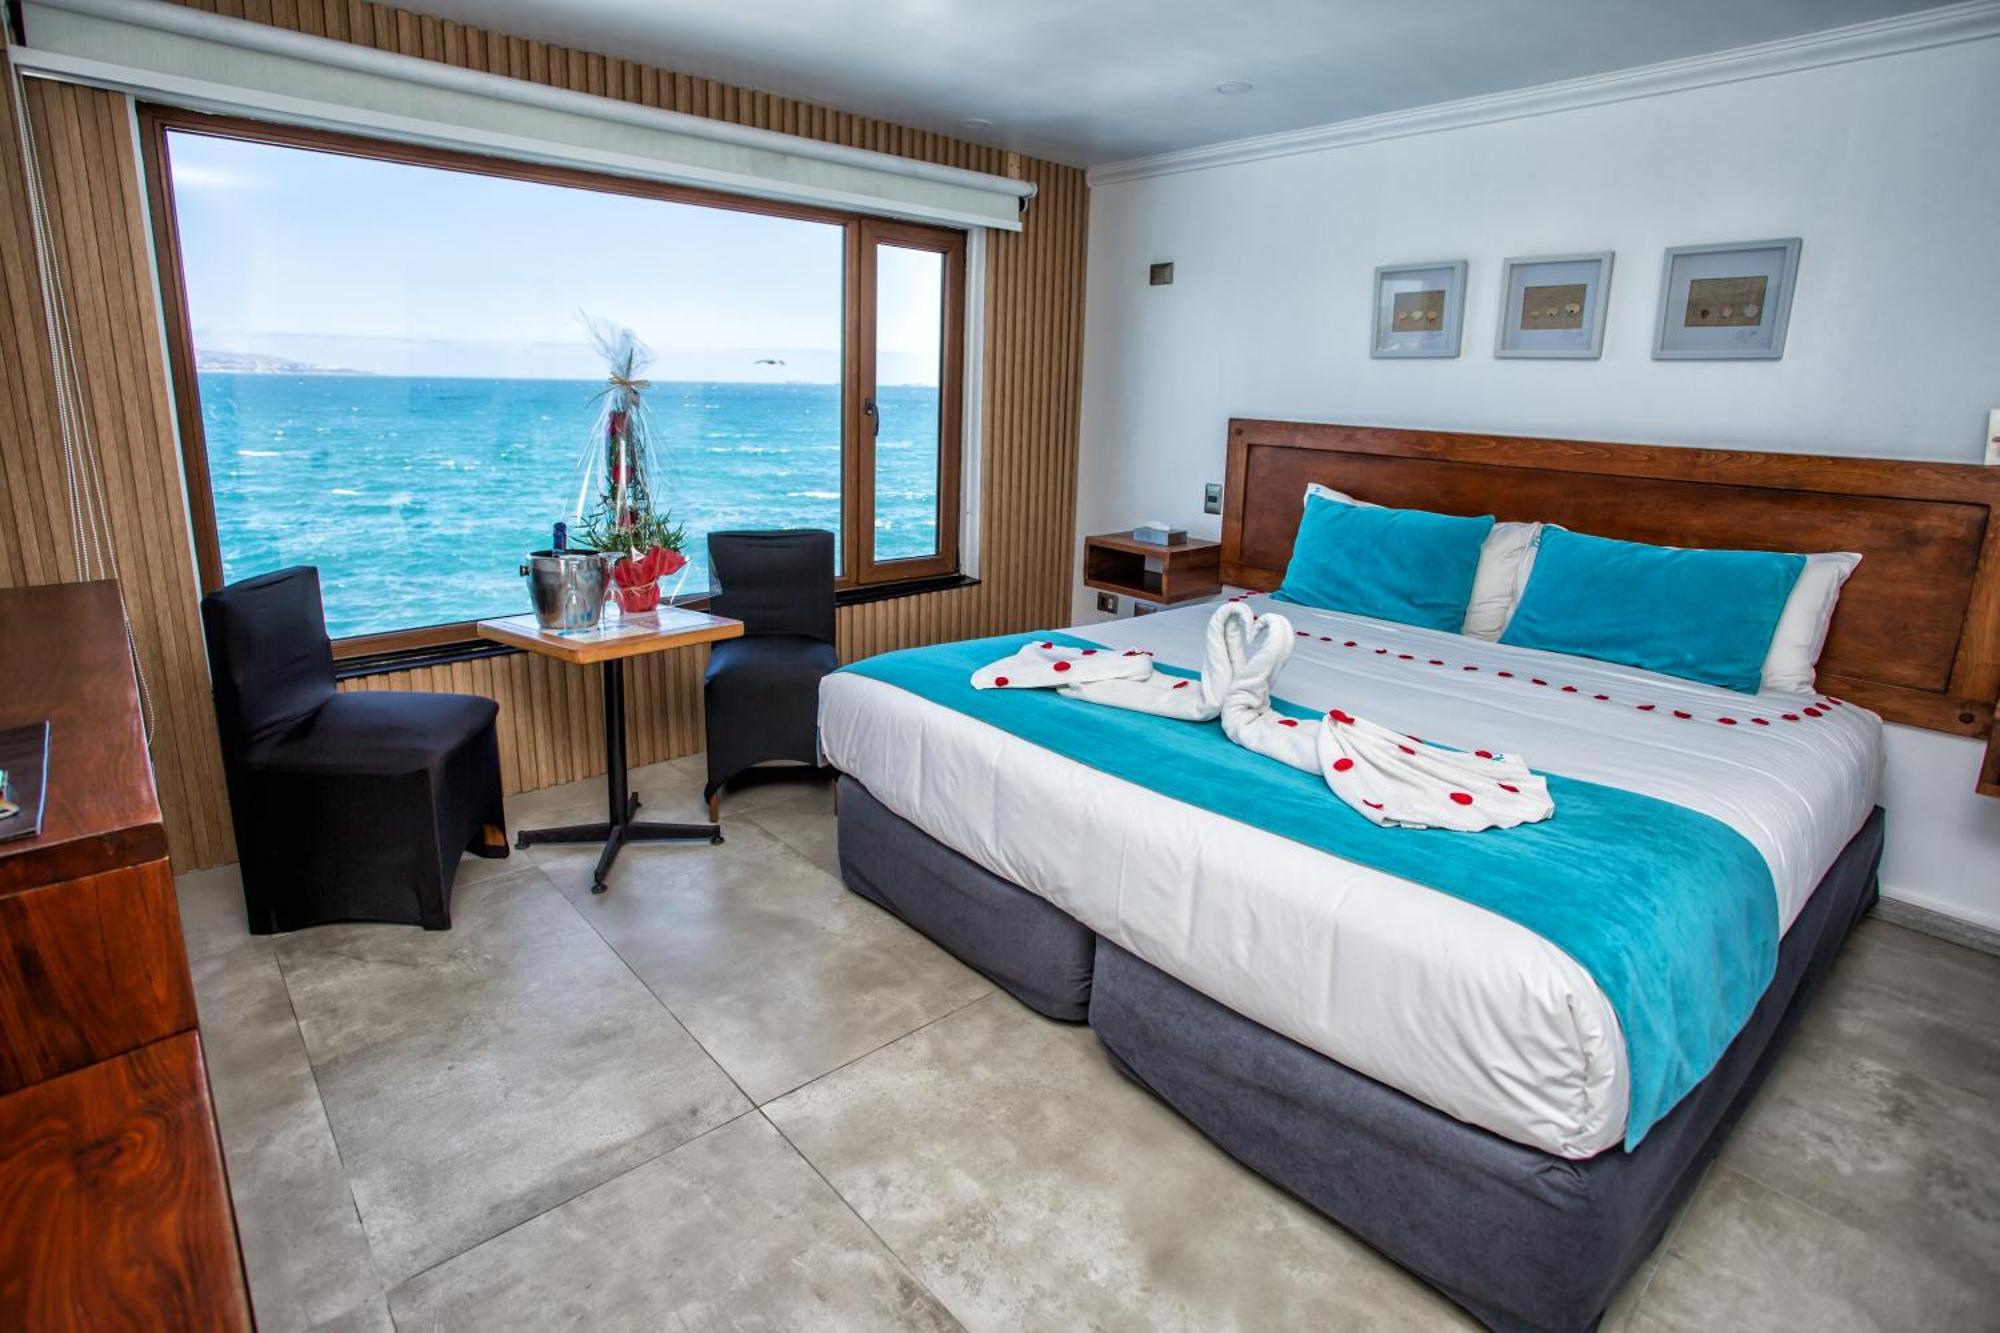 Hotel Oceanic Vina del Mar Exterior photo